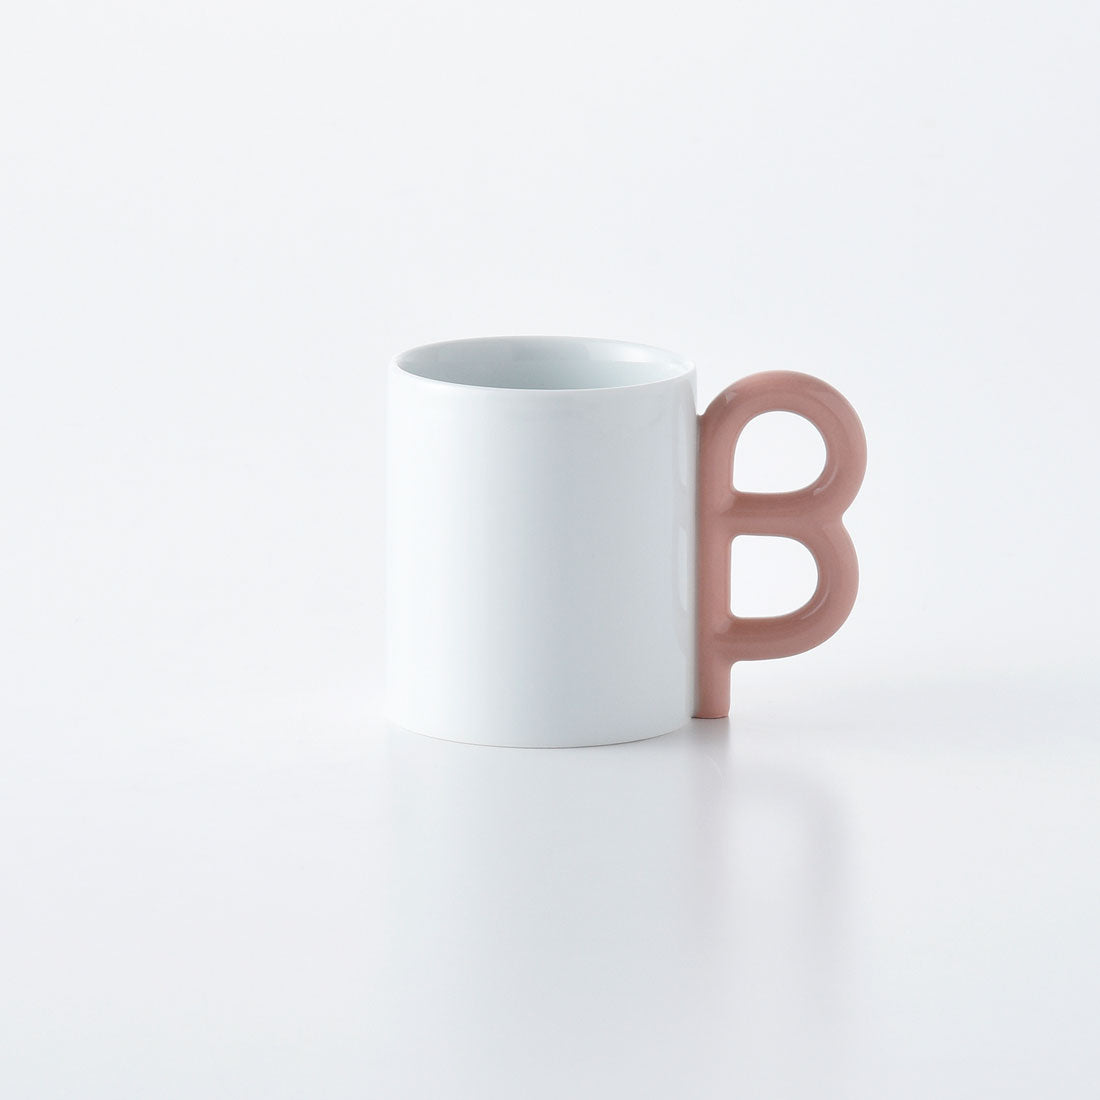 P型コーヒーシリーズ B型マグ ピンク